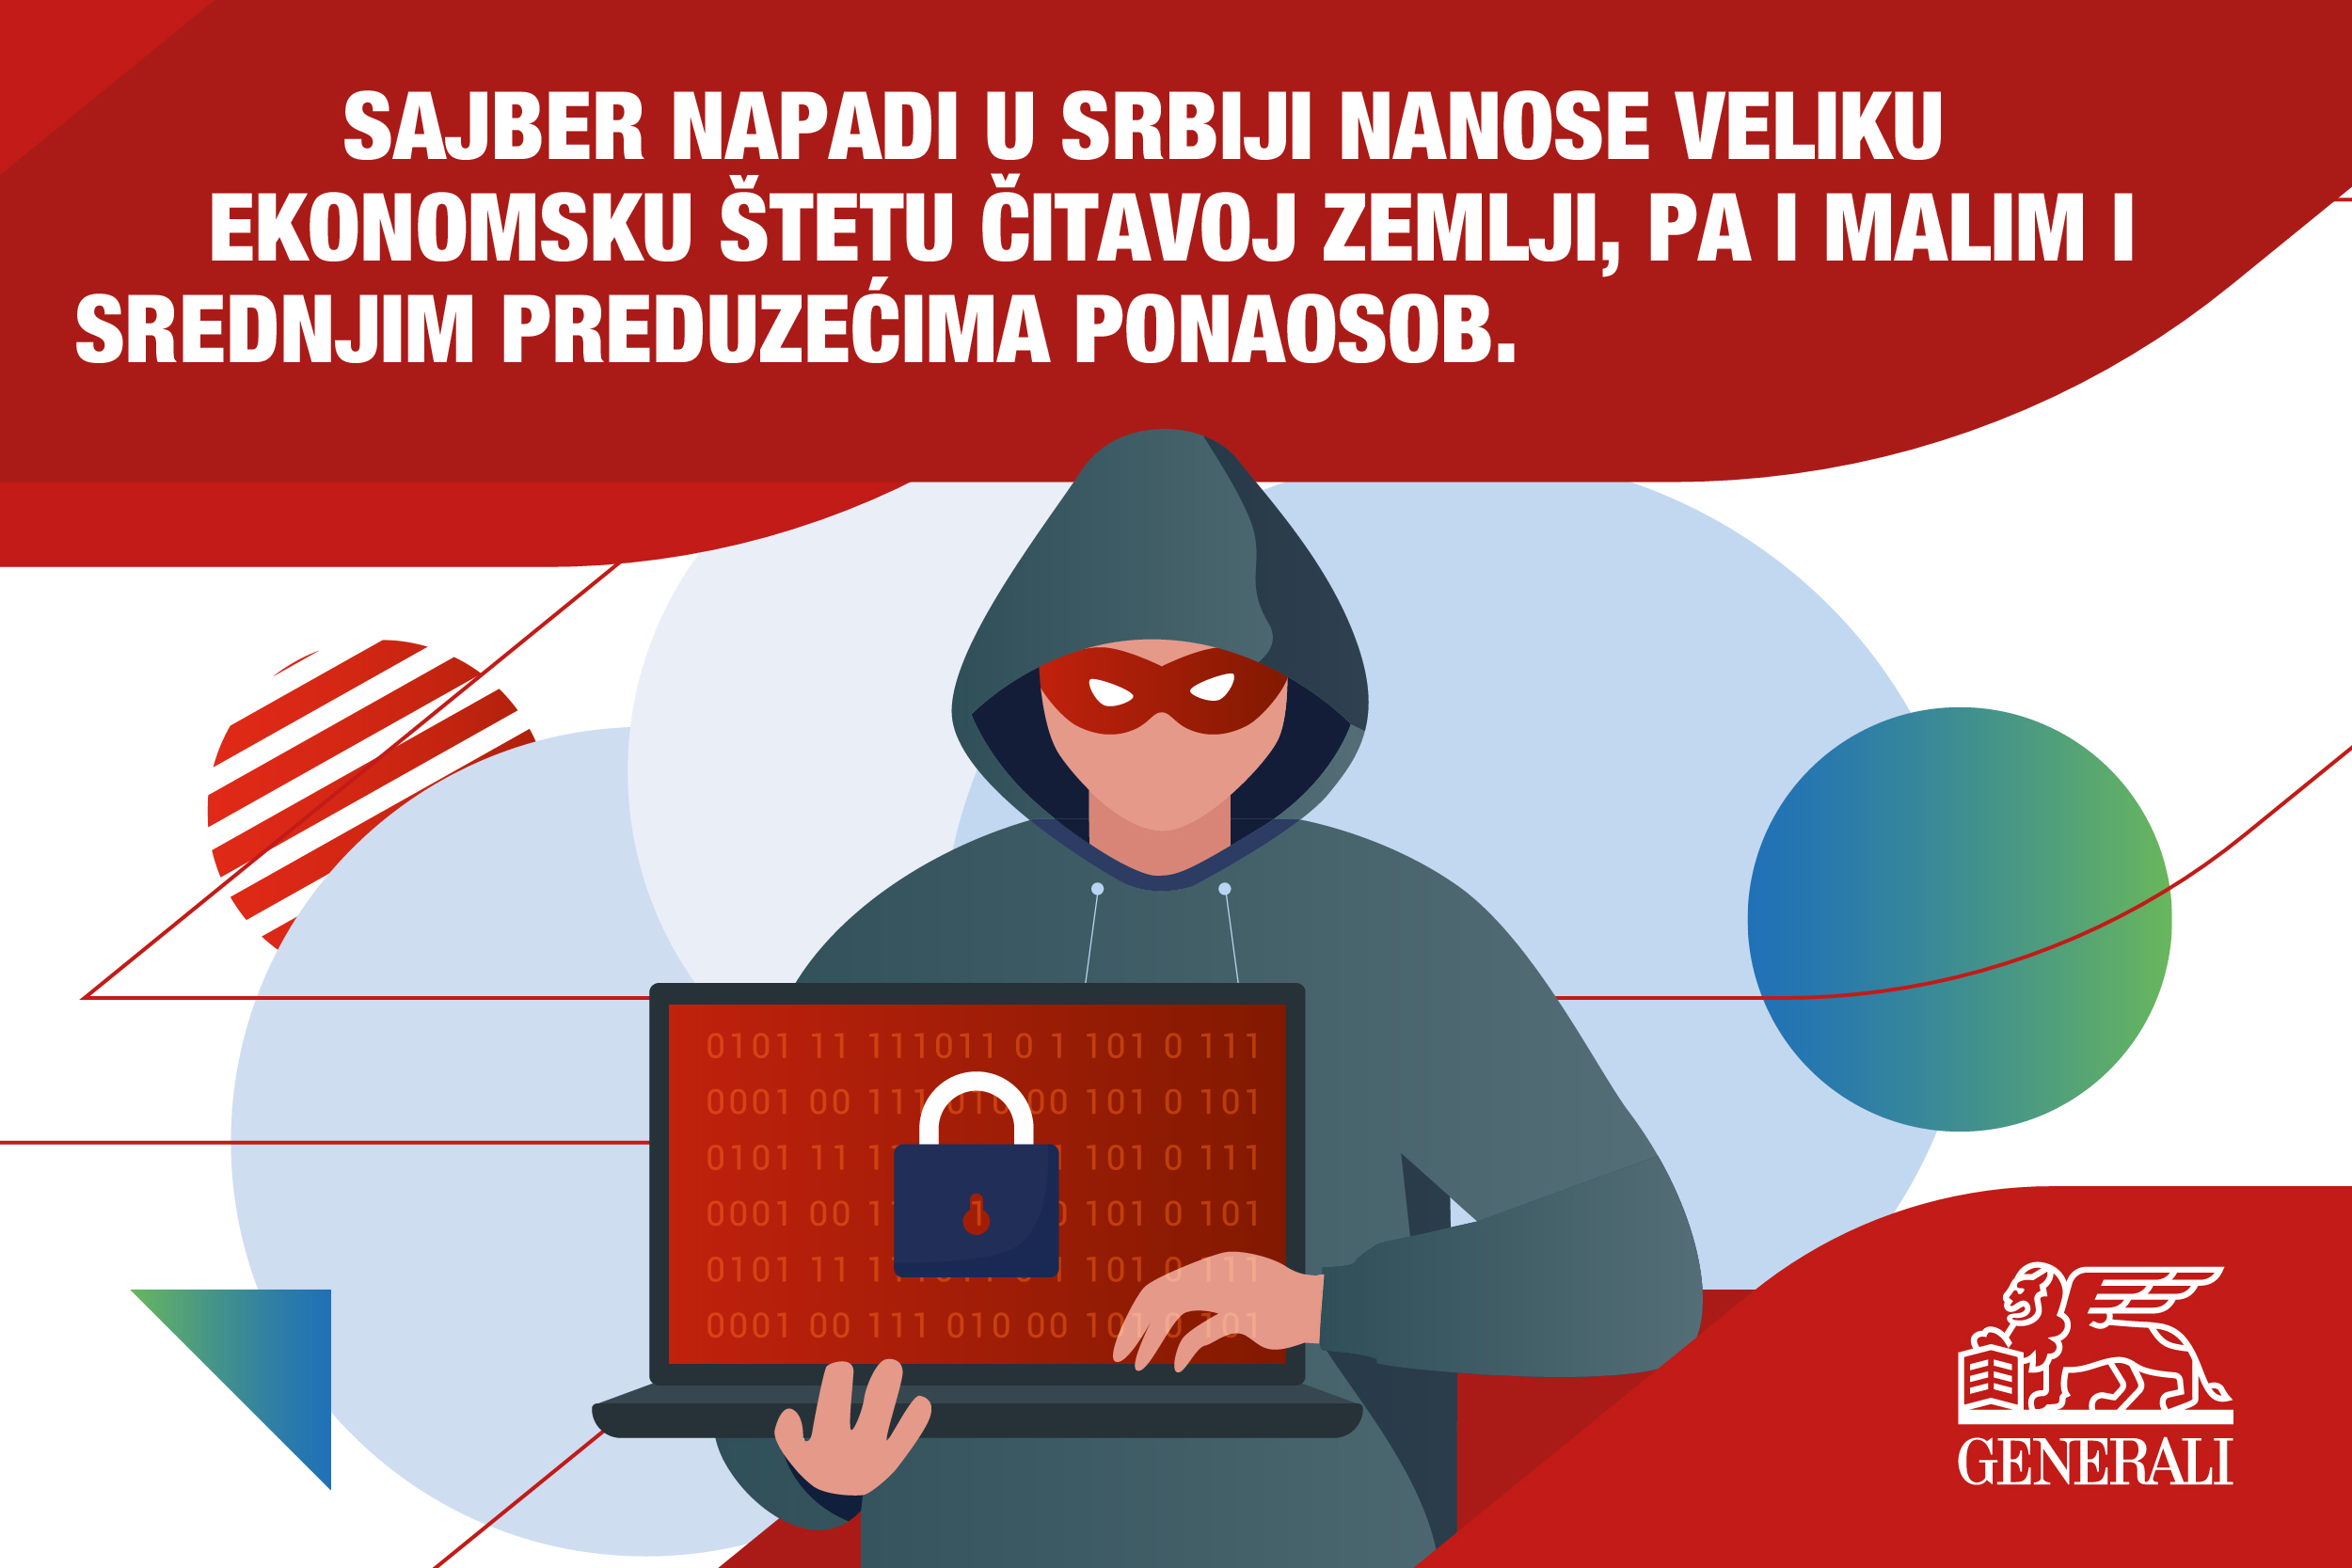 sajber bezbednost sajber napadi u Srbiji sajber kriminal